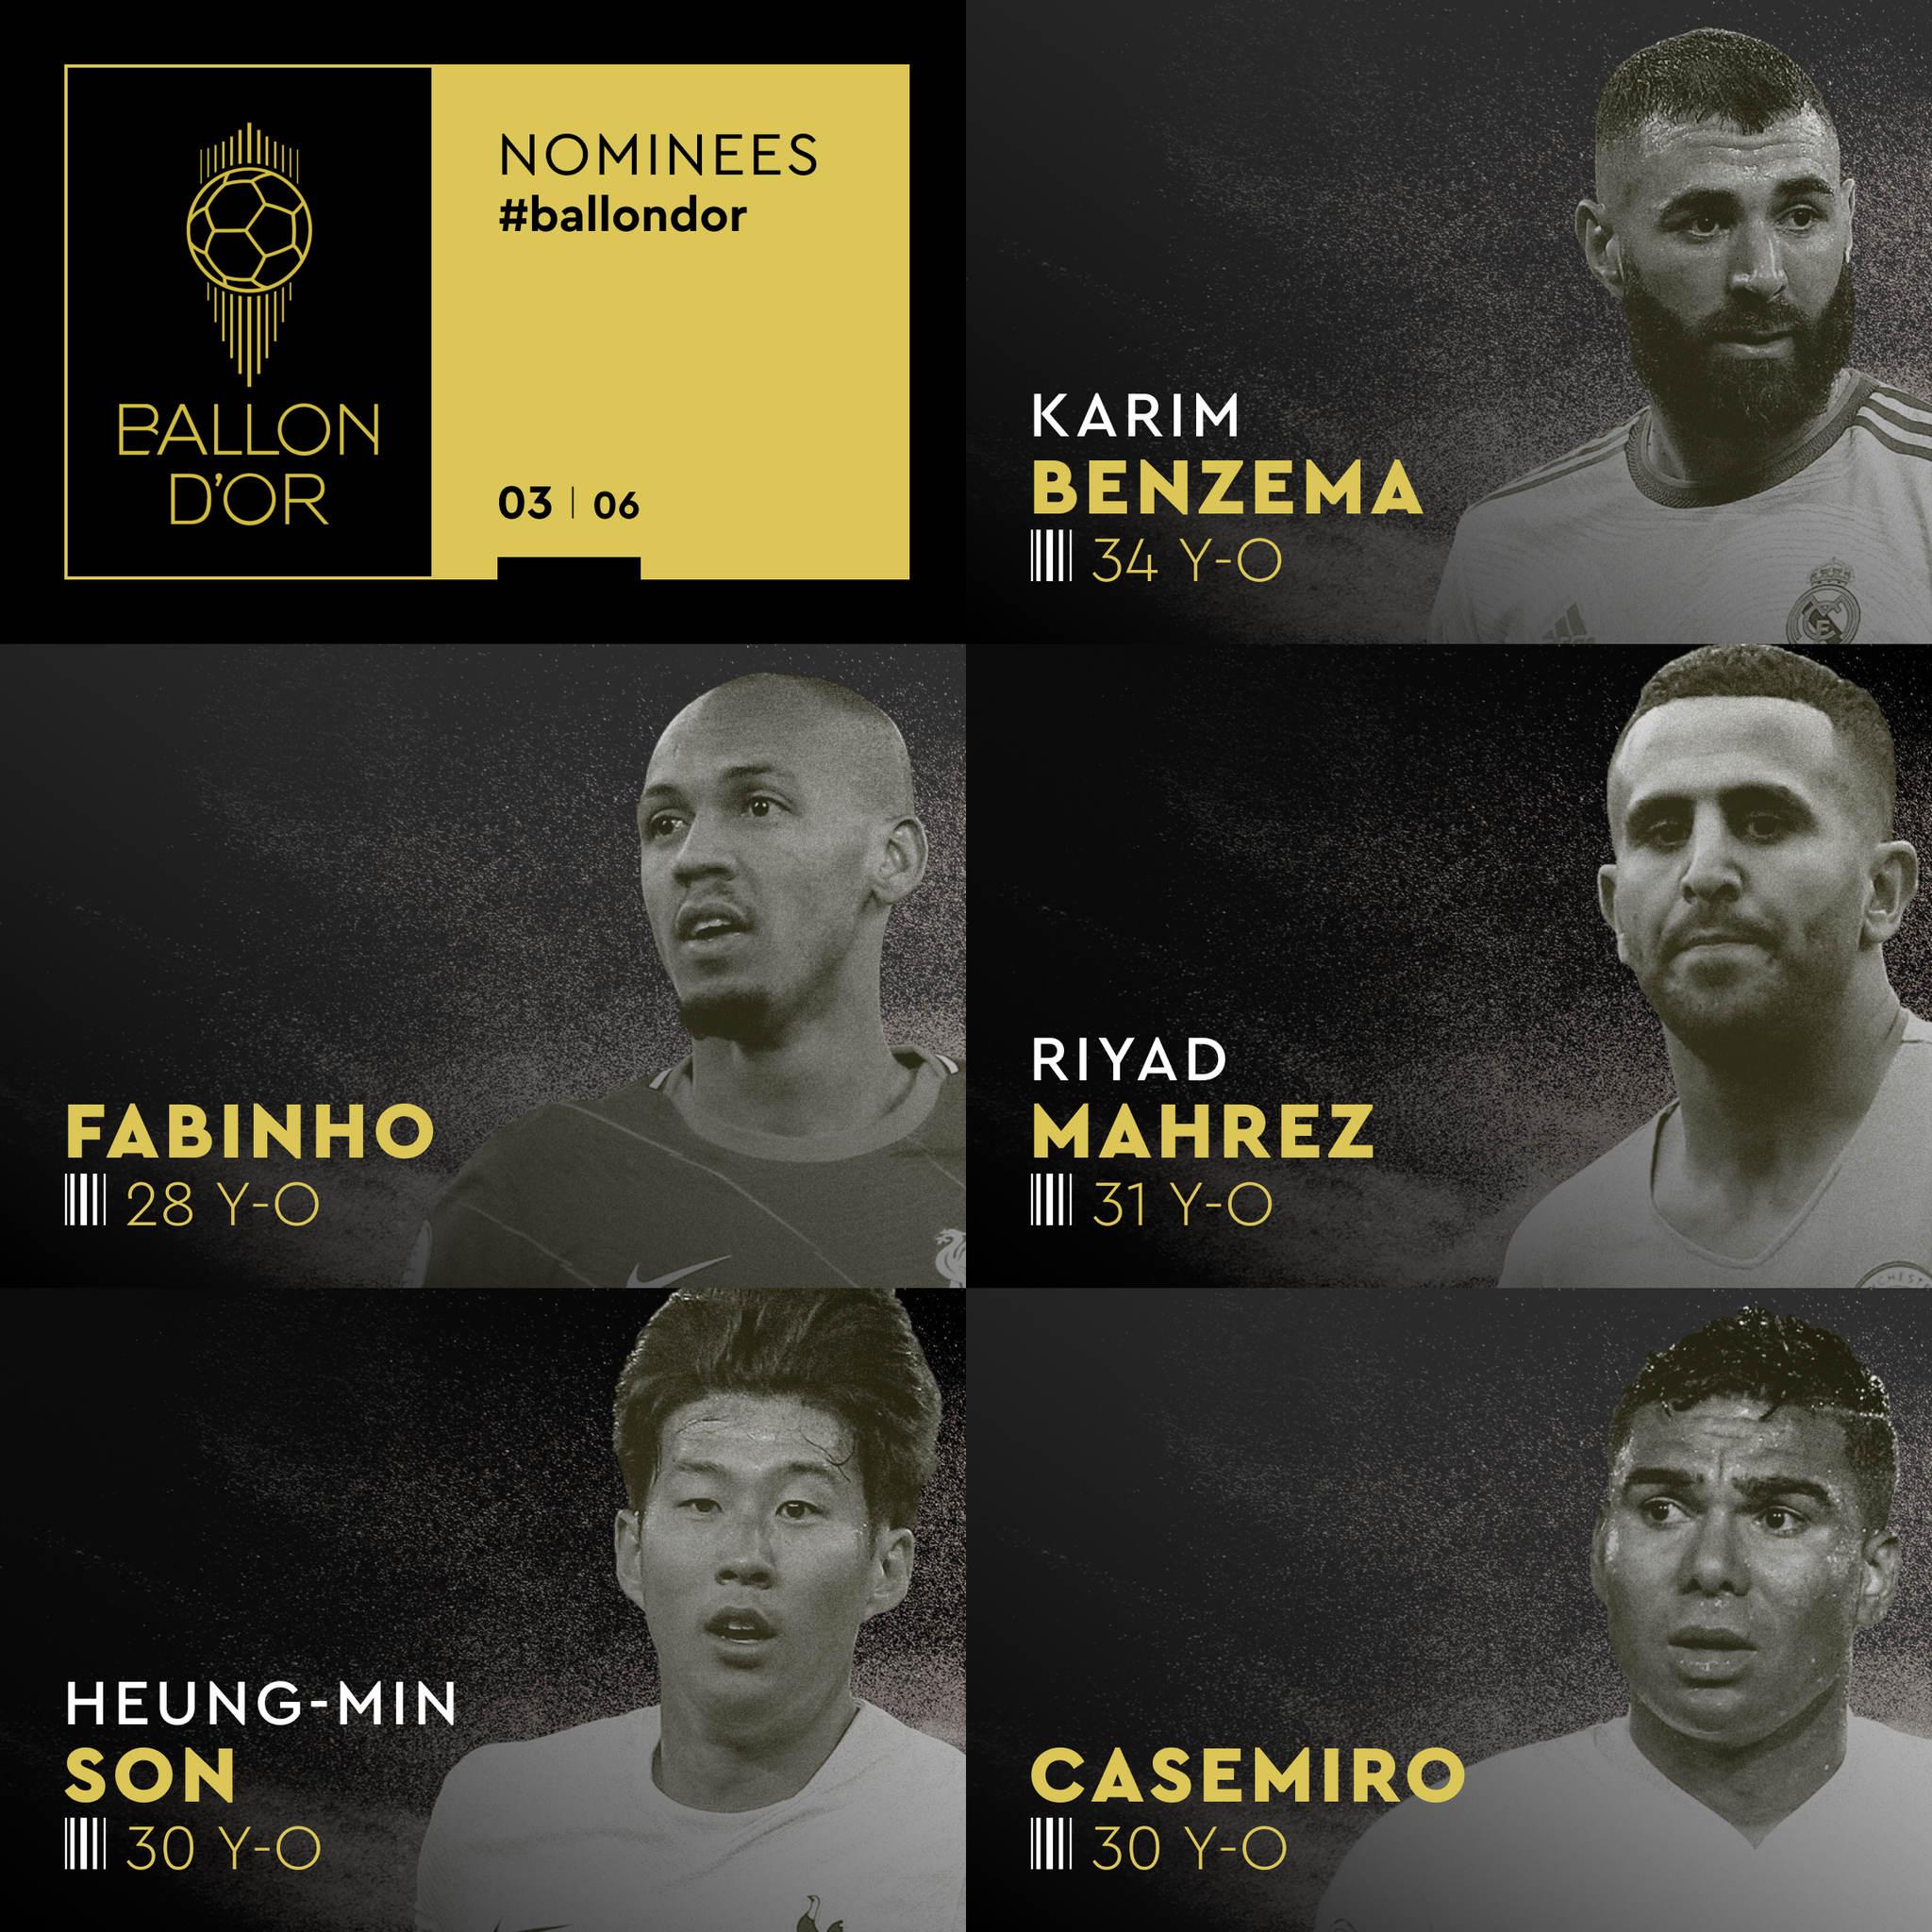 Benzema ganha Bola de Ouro como melhor jogador de futebol do mundo